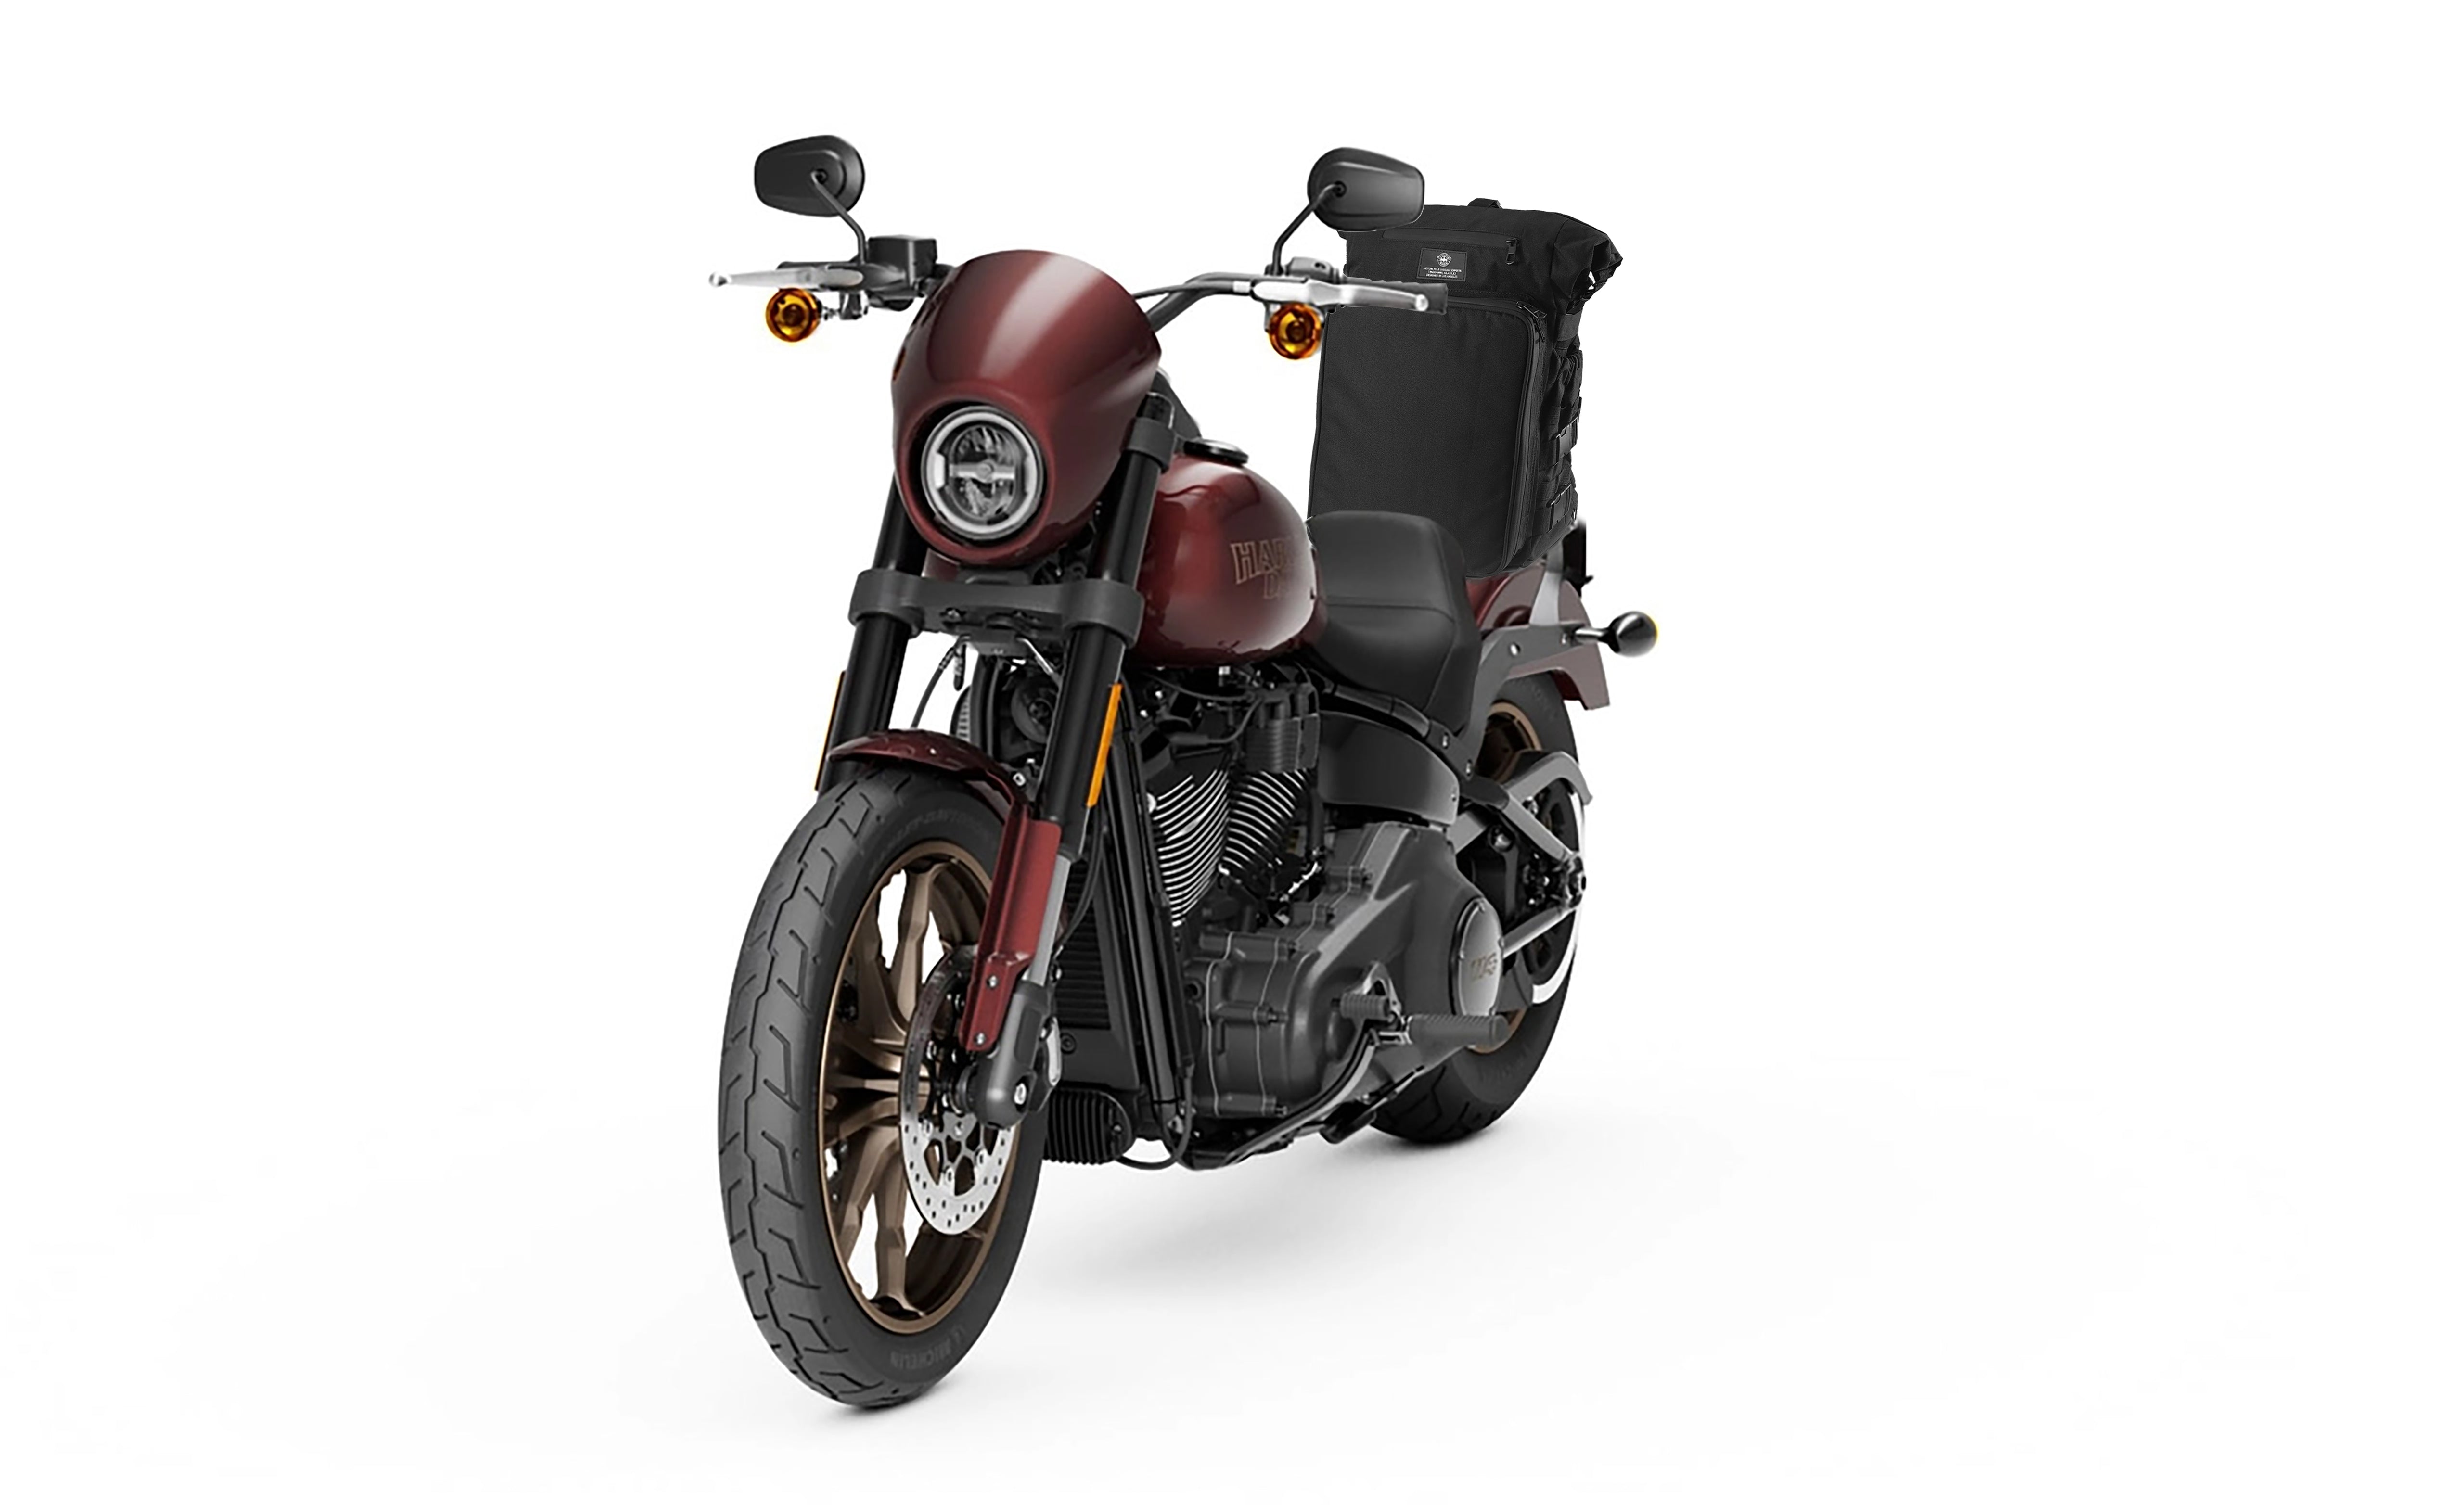 Viking Renegade XL Motorcycle Sissy Bar Bag Bag on Bike View @expand